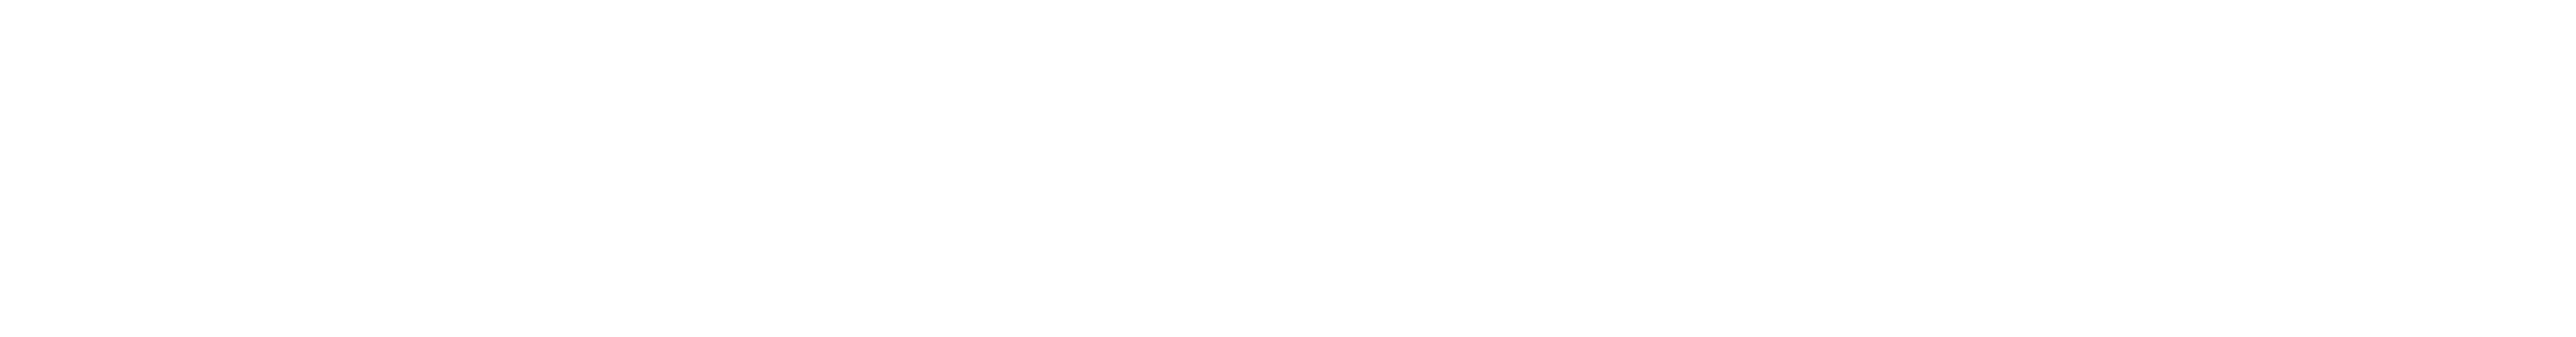 Carlton Care Logo Design PNG